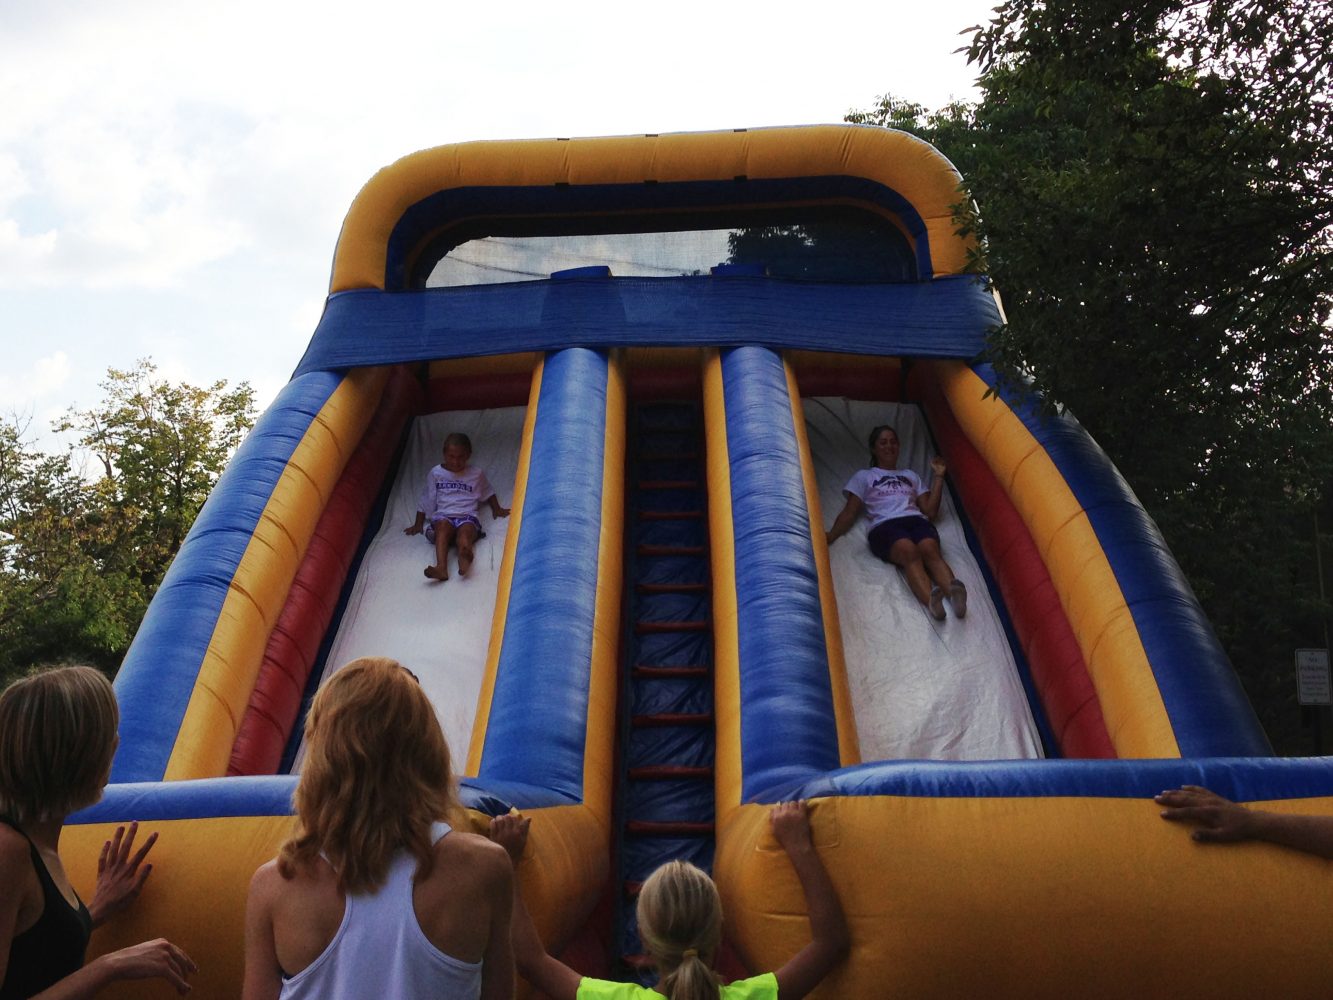 Warrior athletes and kids enjoy inflatable slides together.
JORDAN GERARD